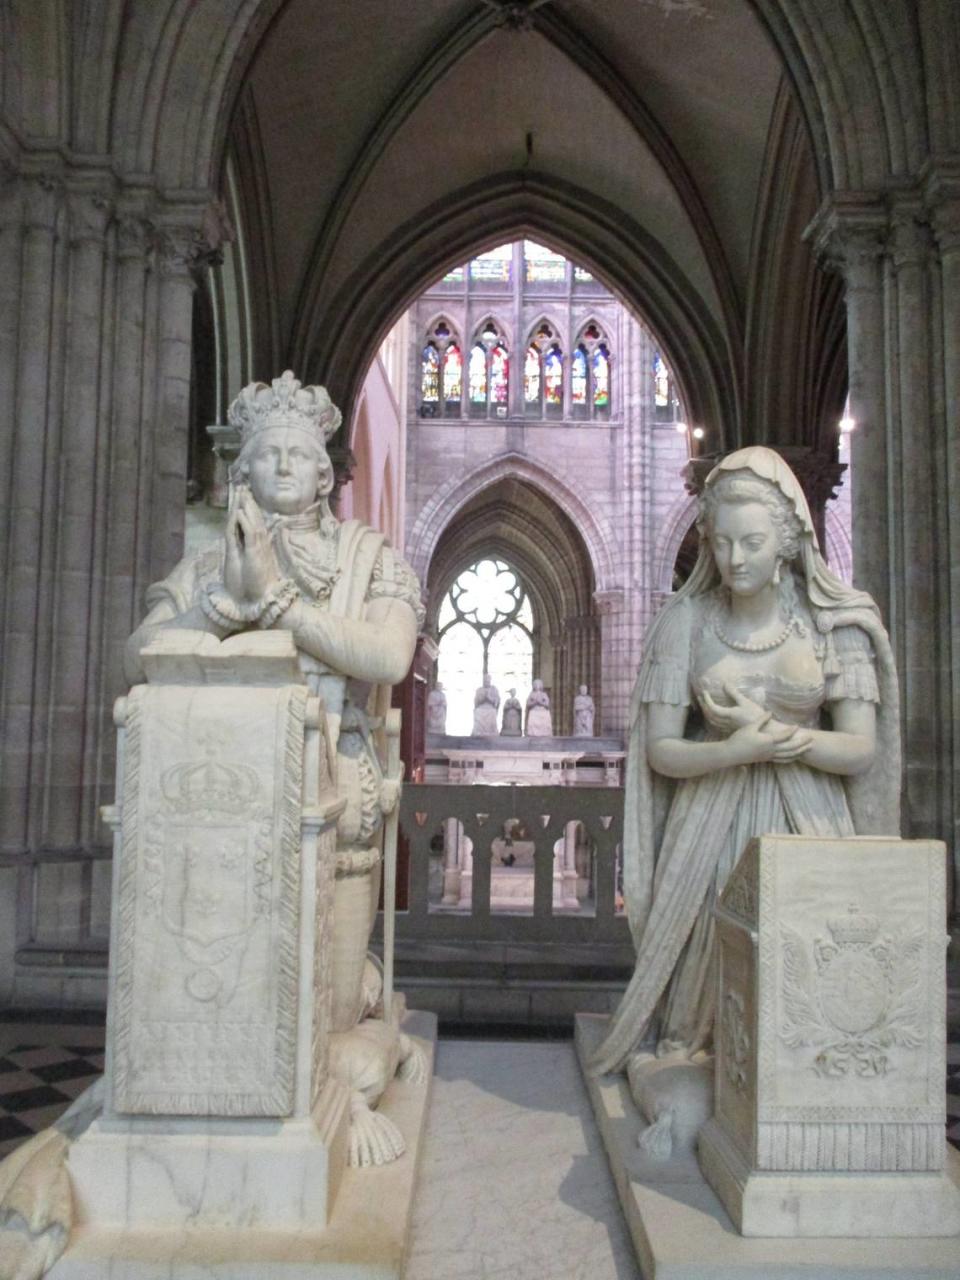 Esculturas conmemorativas de Luis XVI y María Antonieta de Austria. Fotos cortesía/William Navarrete